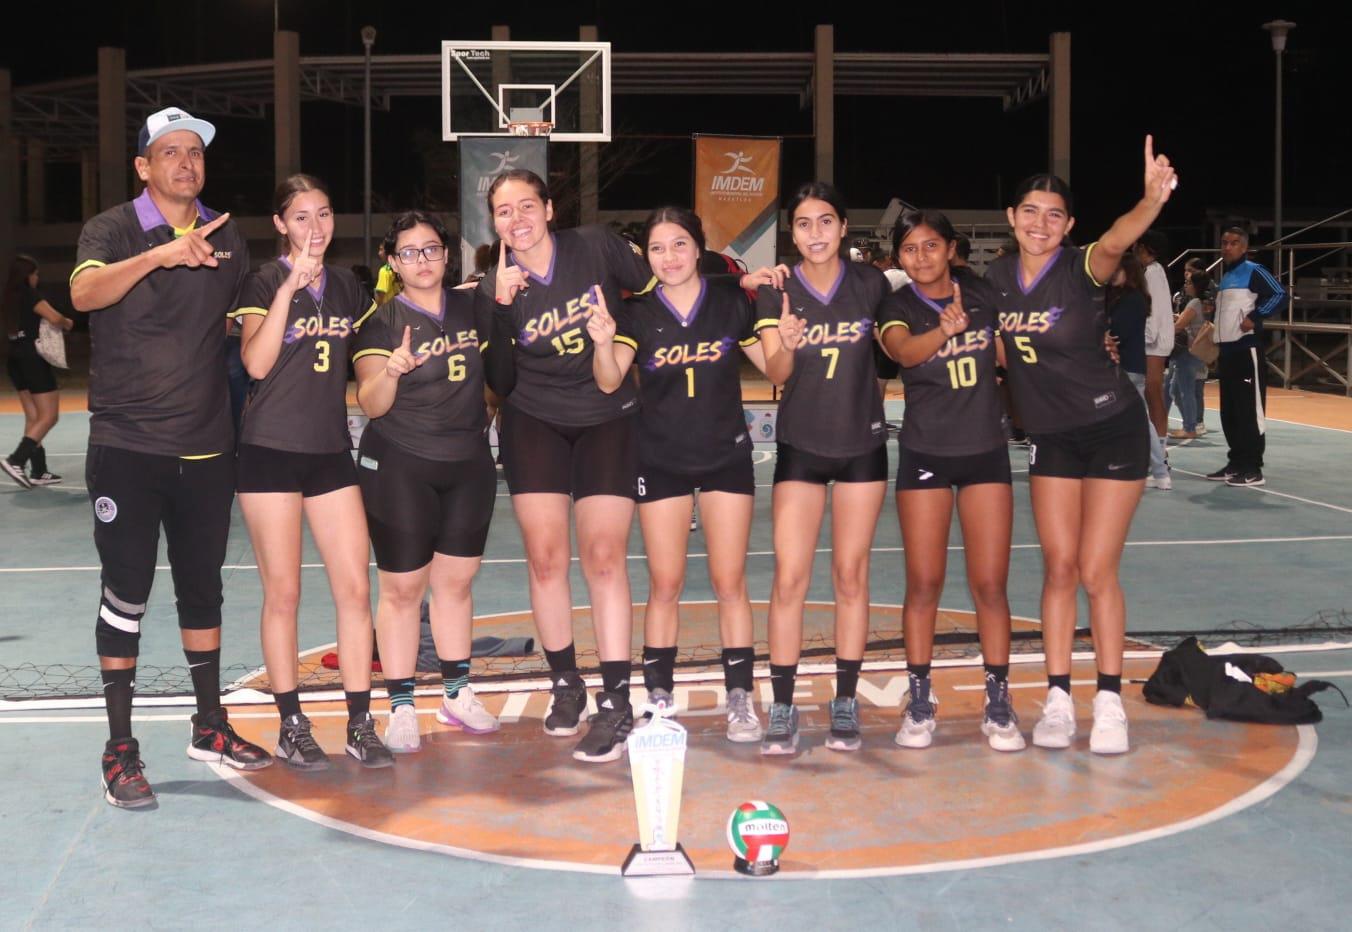 $!Redondean Club Soles y Wapas Team gran campaña con campeonato en Voleibol de Sala Imdem